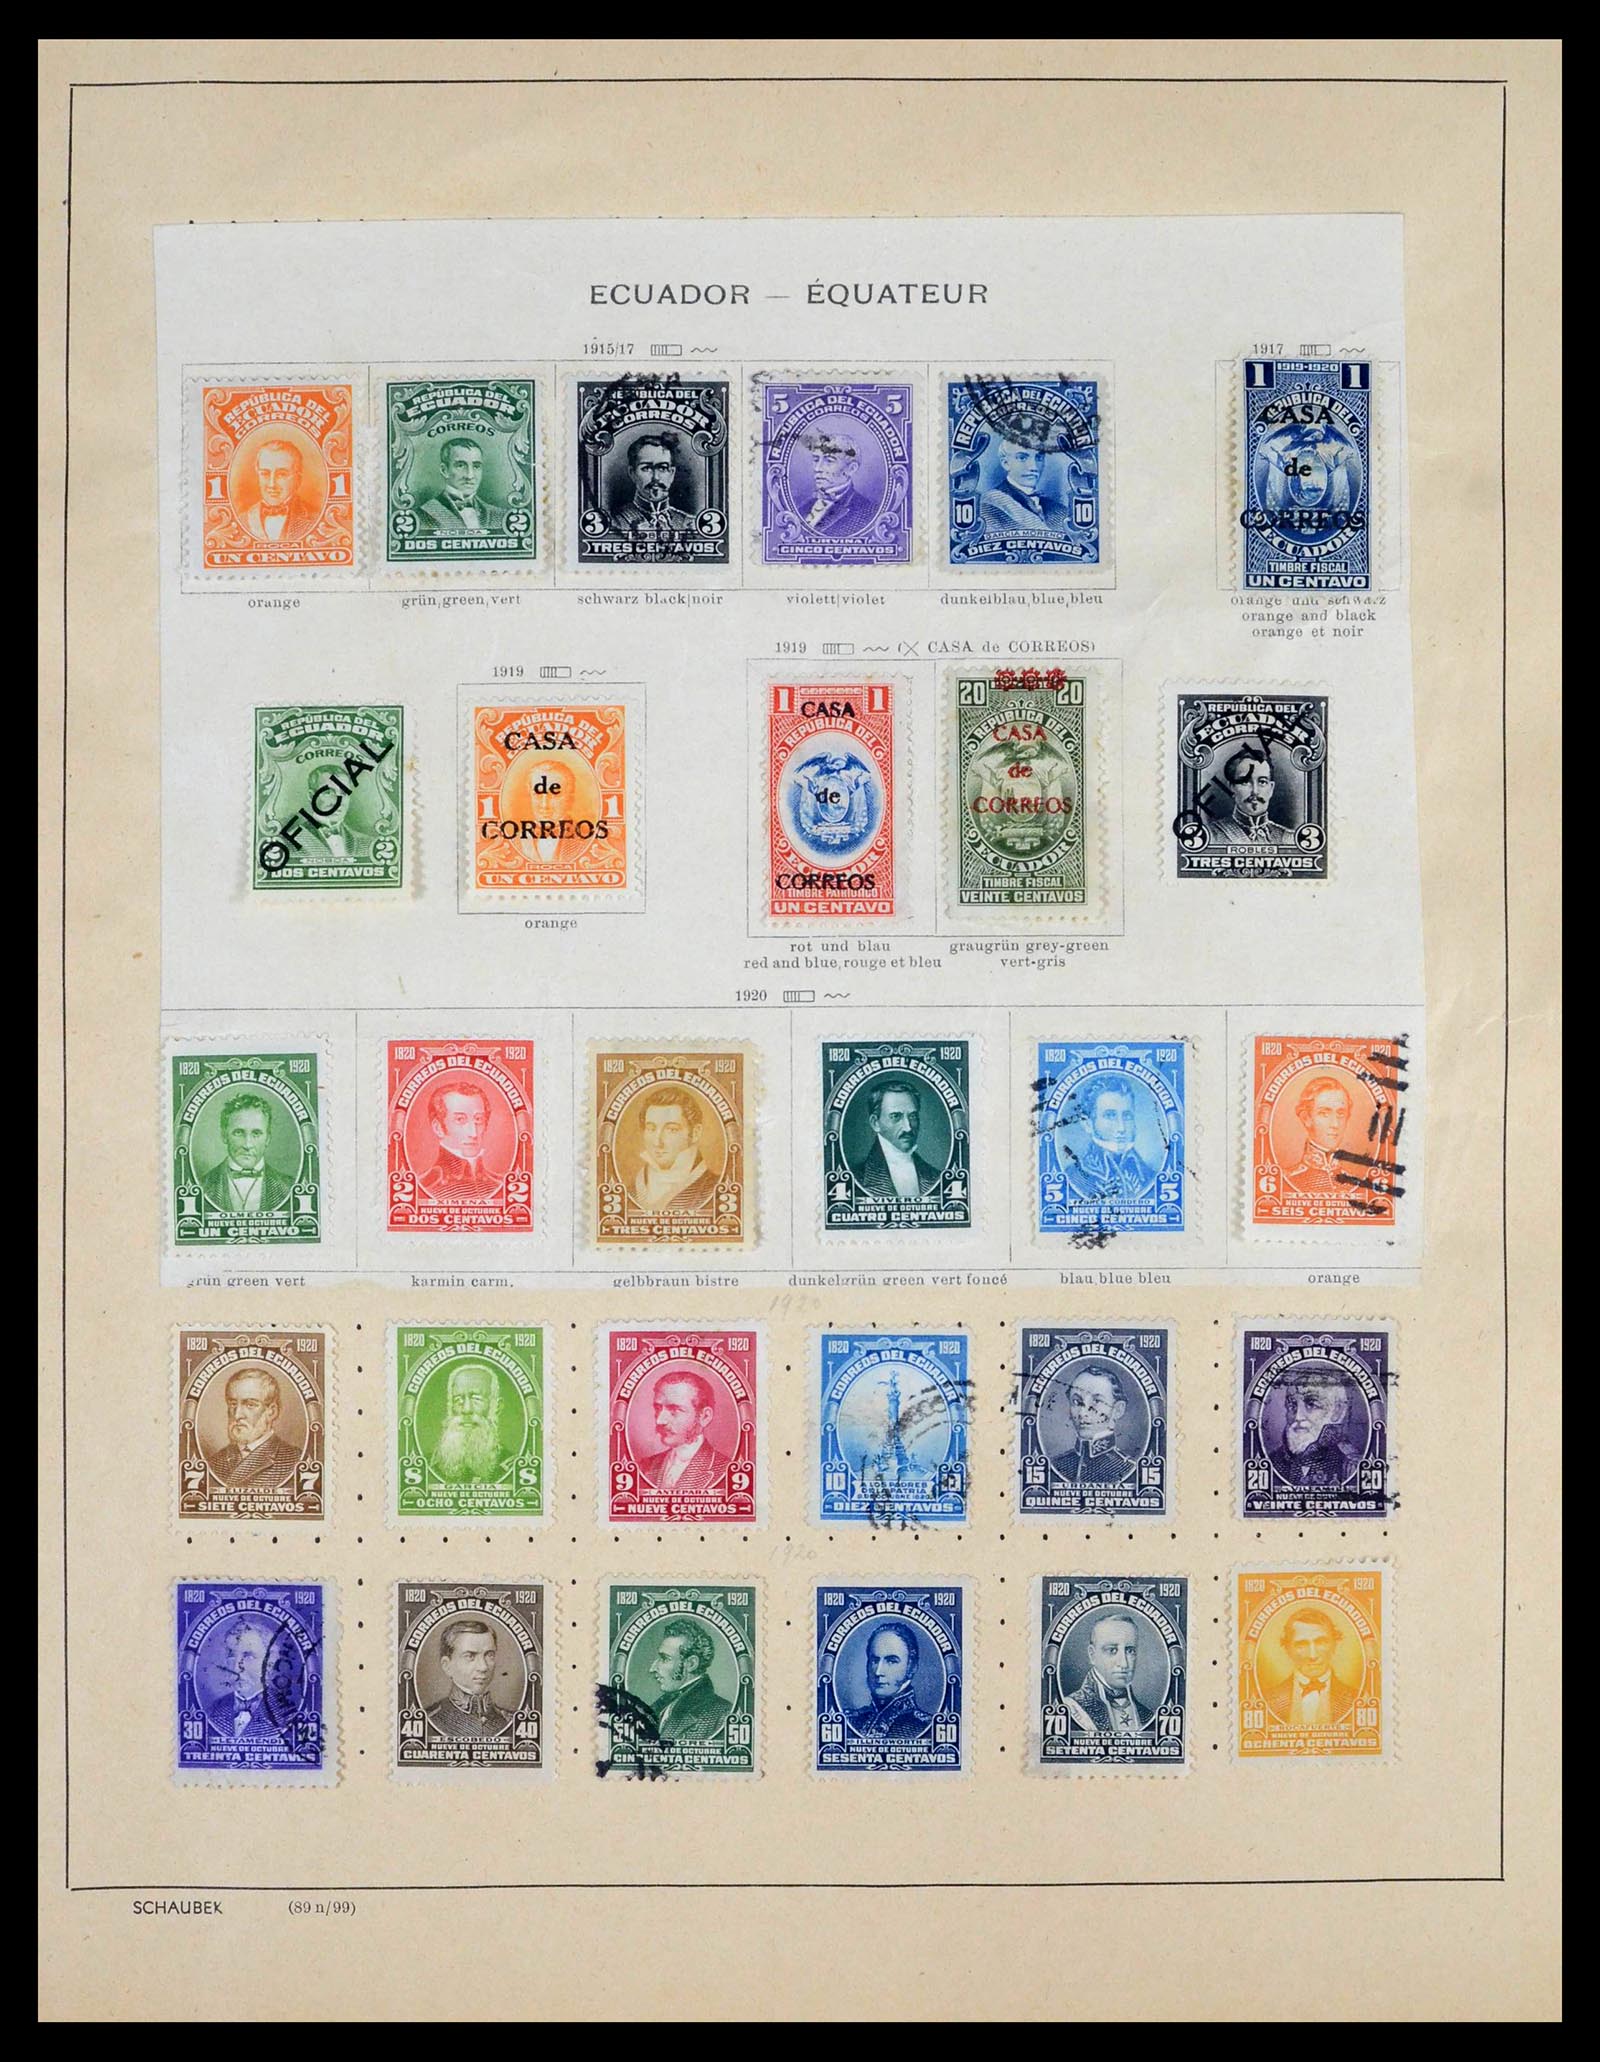 39456 0040 - Stamp collection 39456 Ecuador 1865-1960.